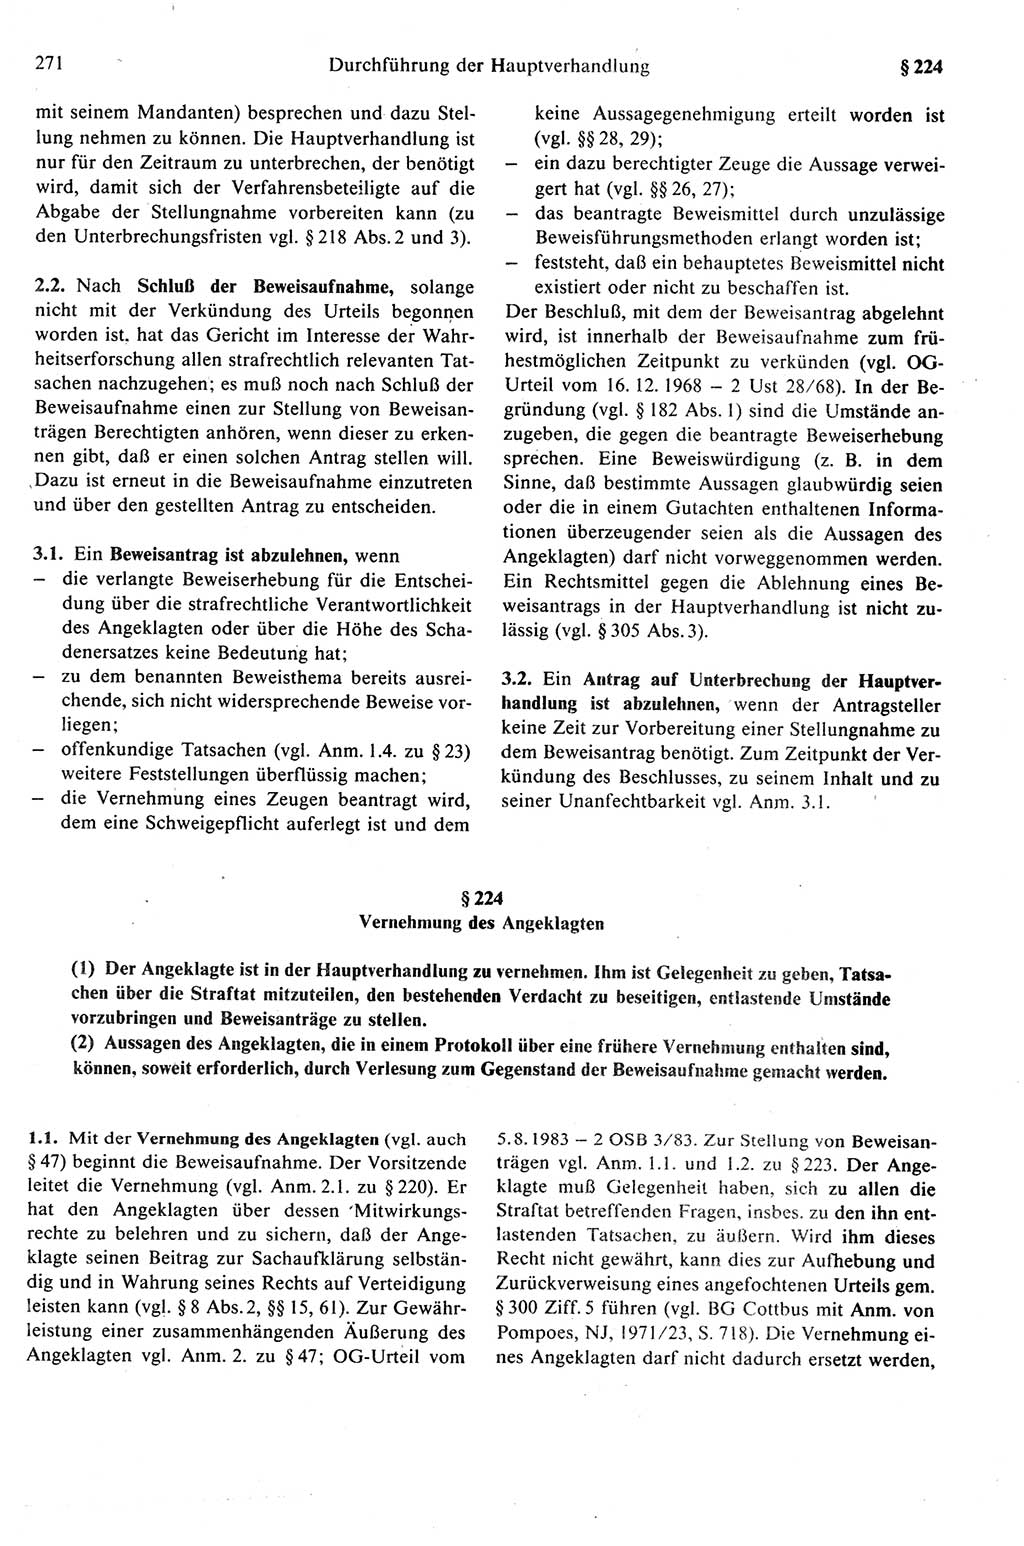 Strafprozeßrecht der DDR (Deutsche Demokratische Republik), Kommentar zur Strafprozeßordnung (StPO) 1989, Seite 271 (Strafprozeßr. DDR Komm. StPO 1989, S. 271)